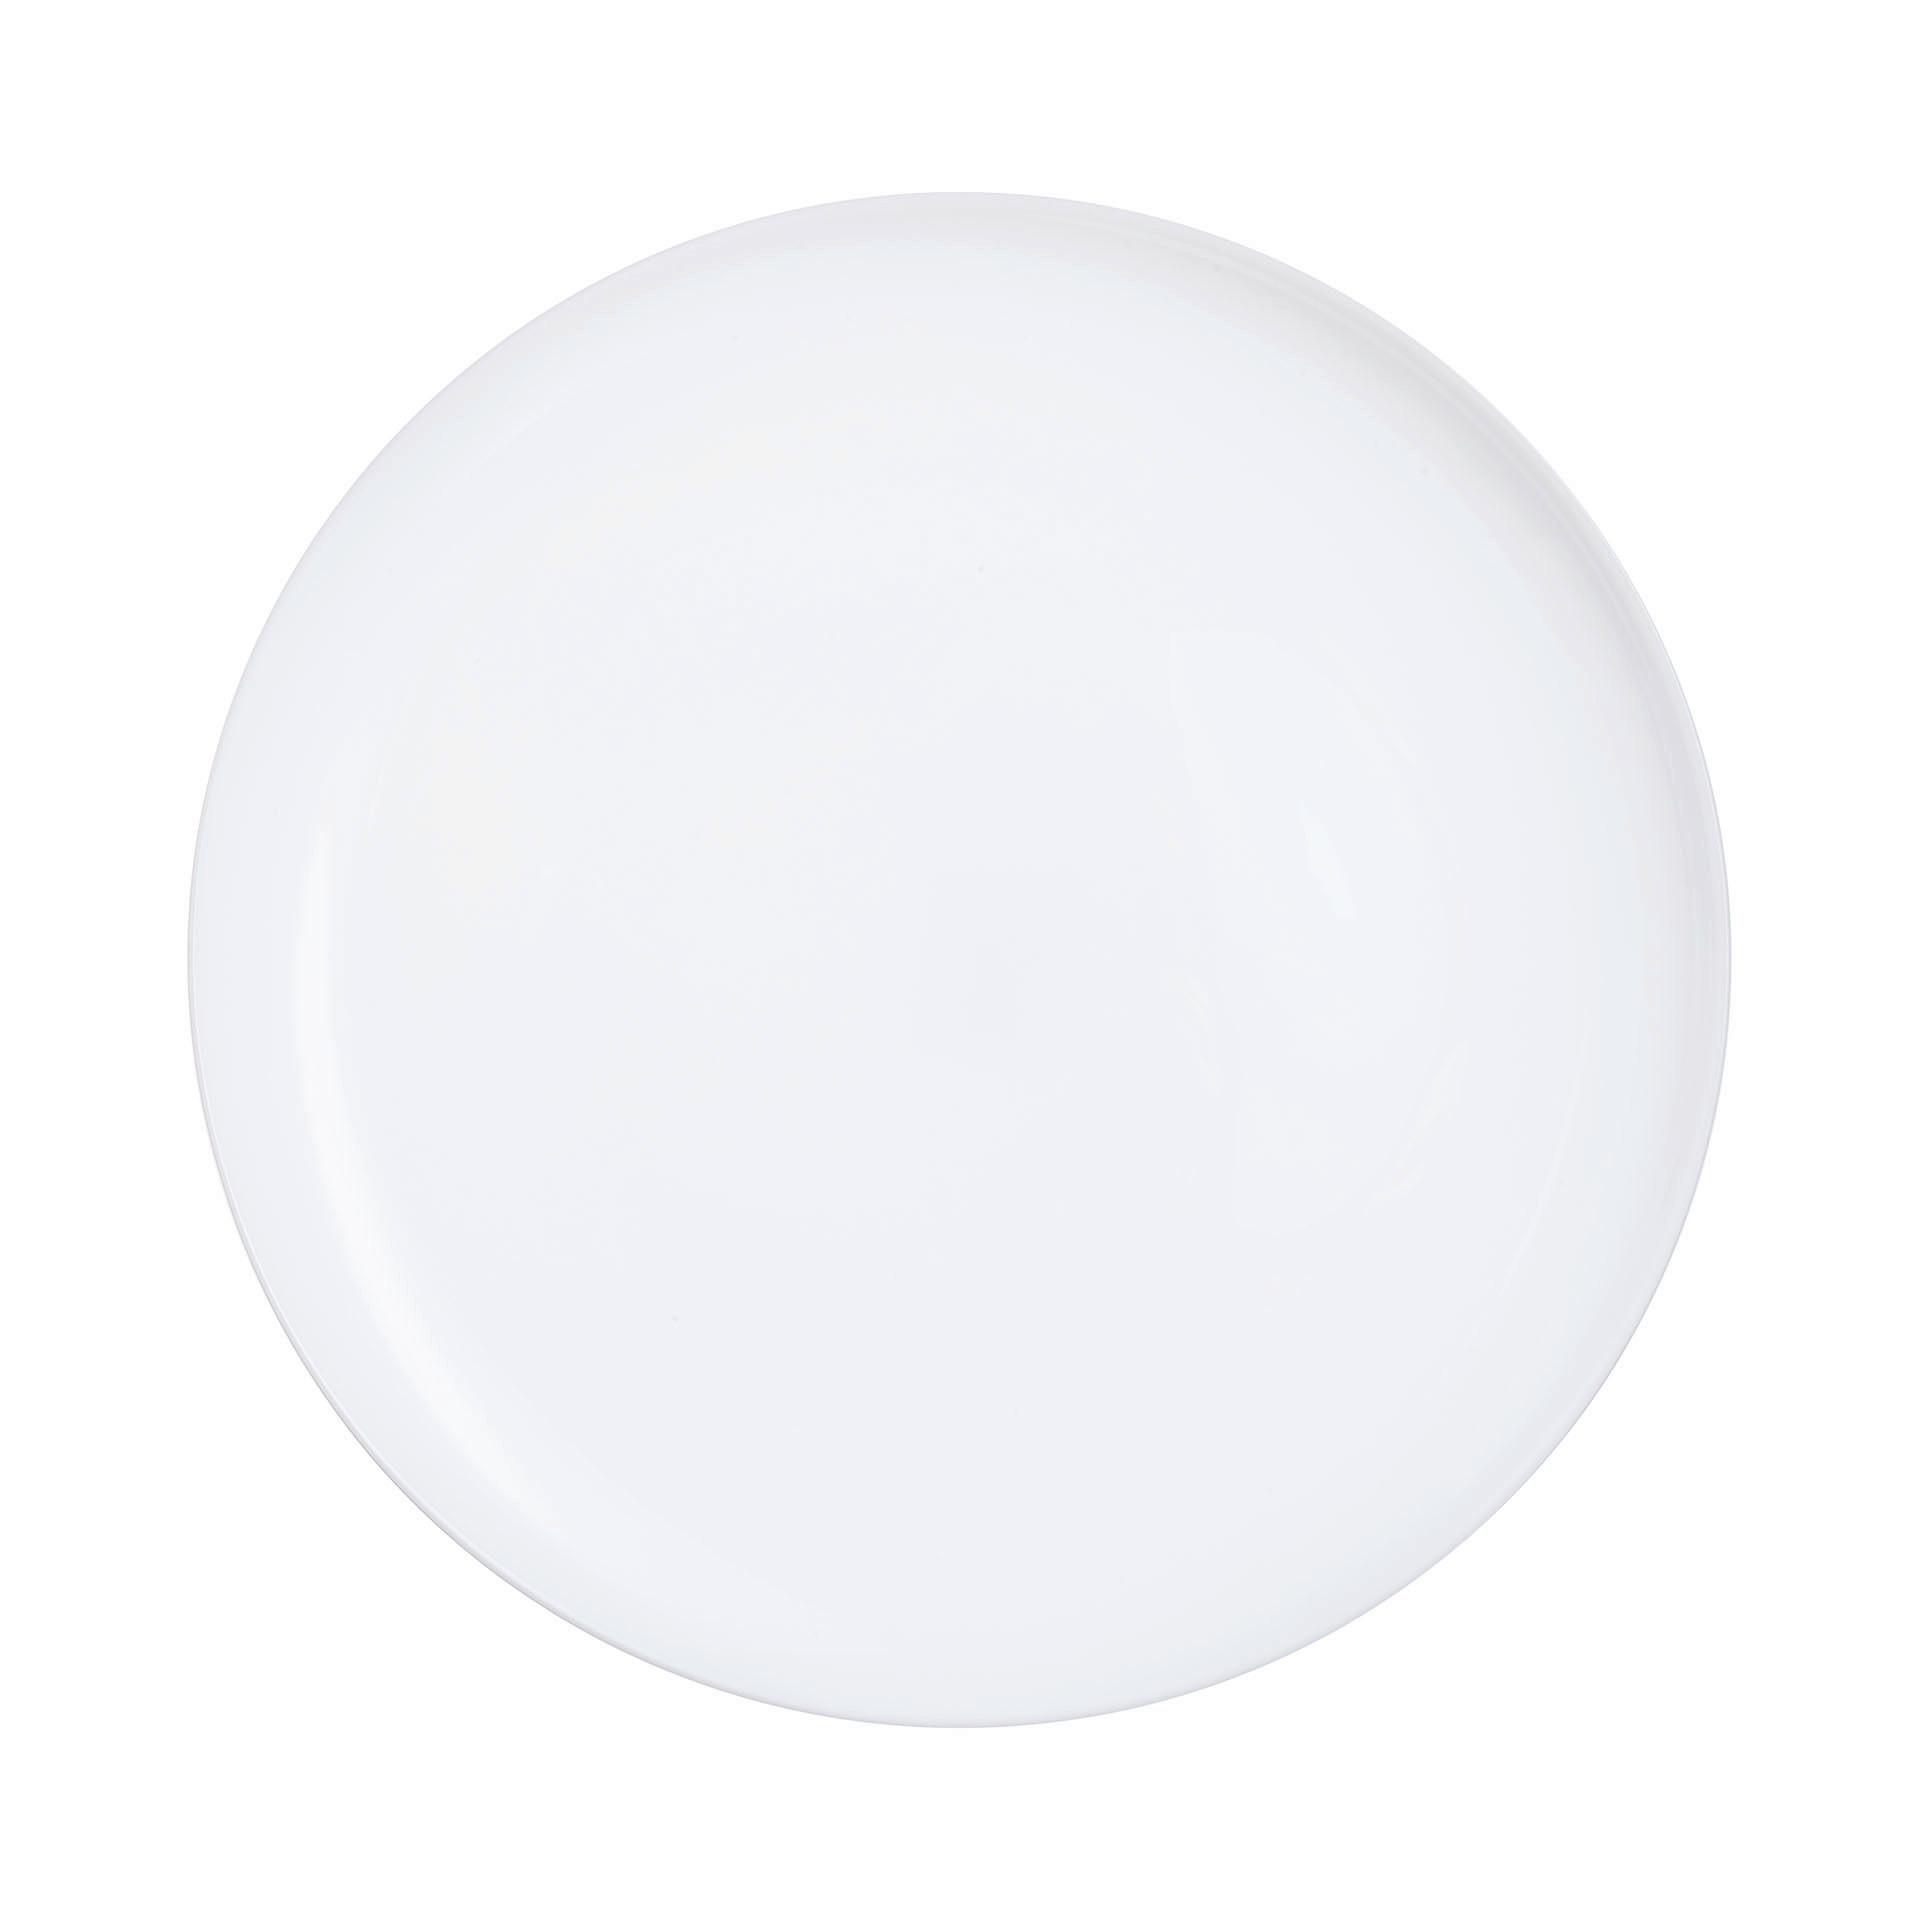 Talíř Na Pizzu Brigitte - bílá, Konvenční, sklo (32/2,4cm) - Based